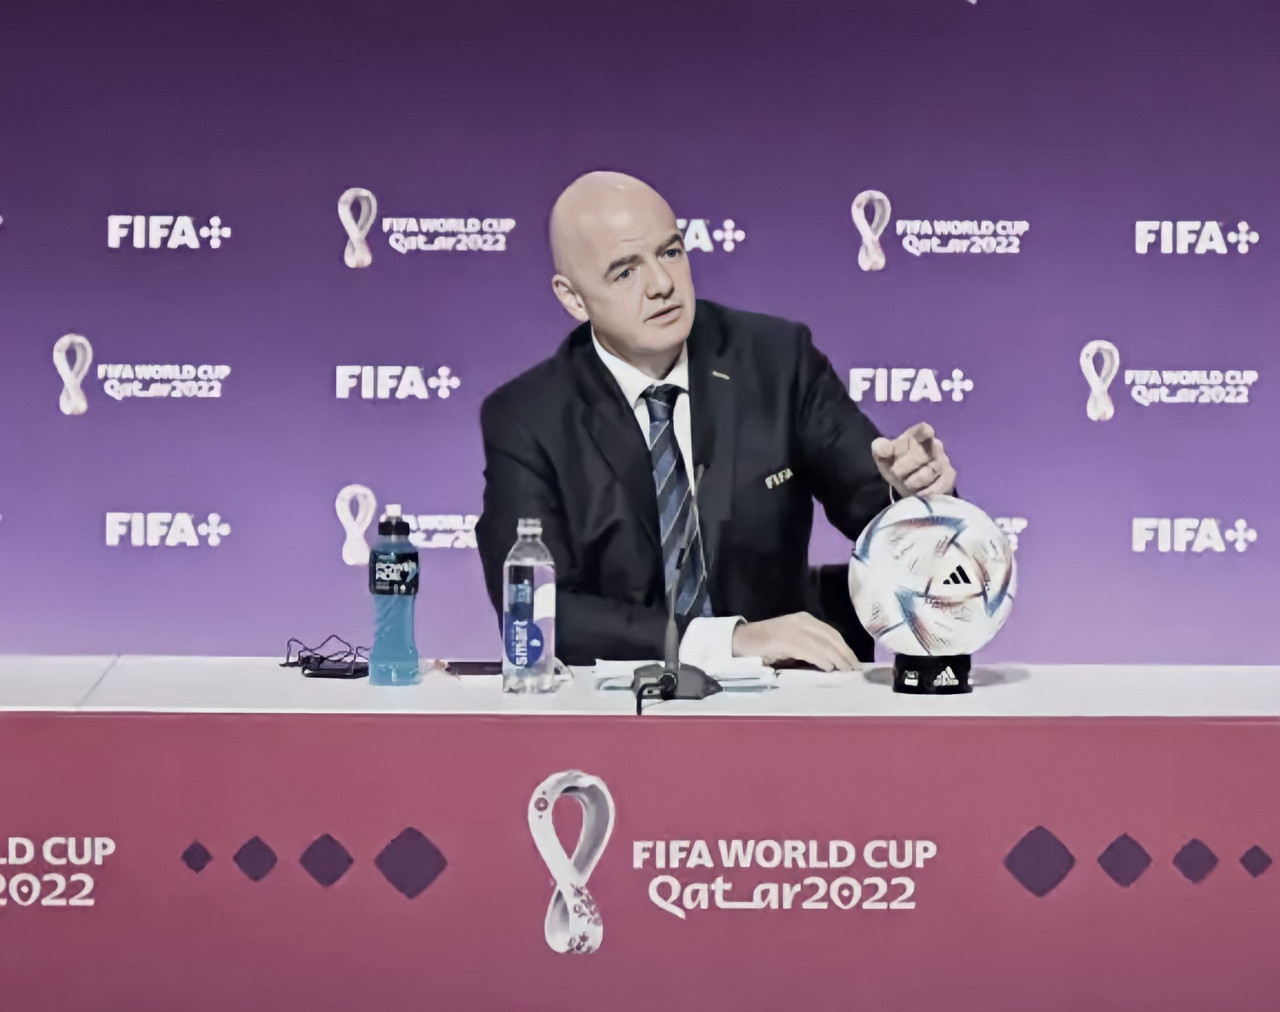 Infantino realiza coletiva polêmica e rebate críticas sobre Copa do Mundo no Catar: "Não assista"